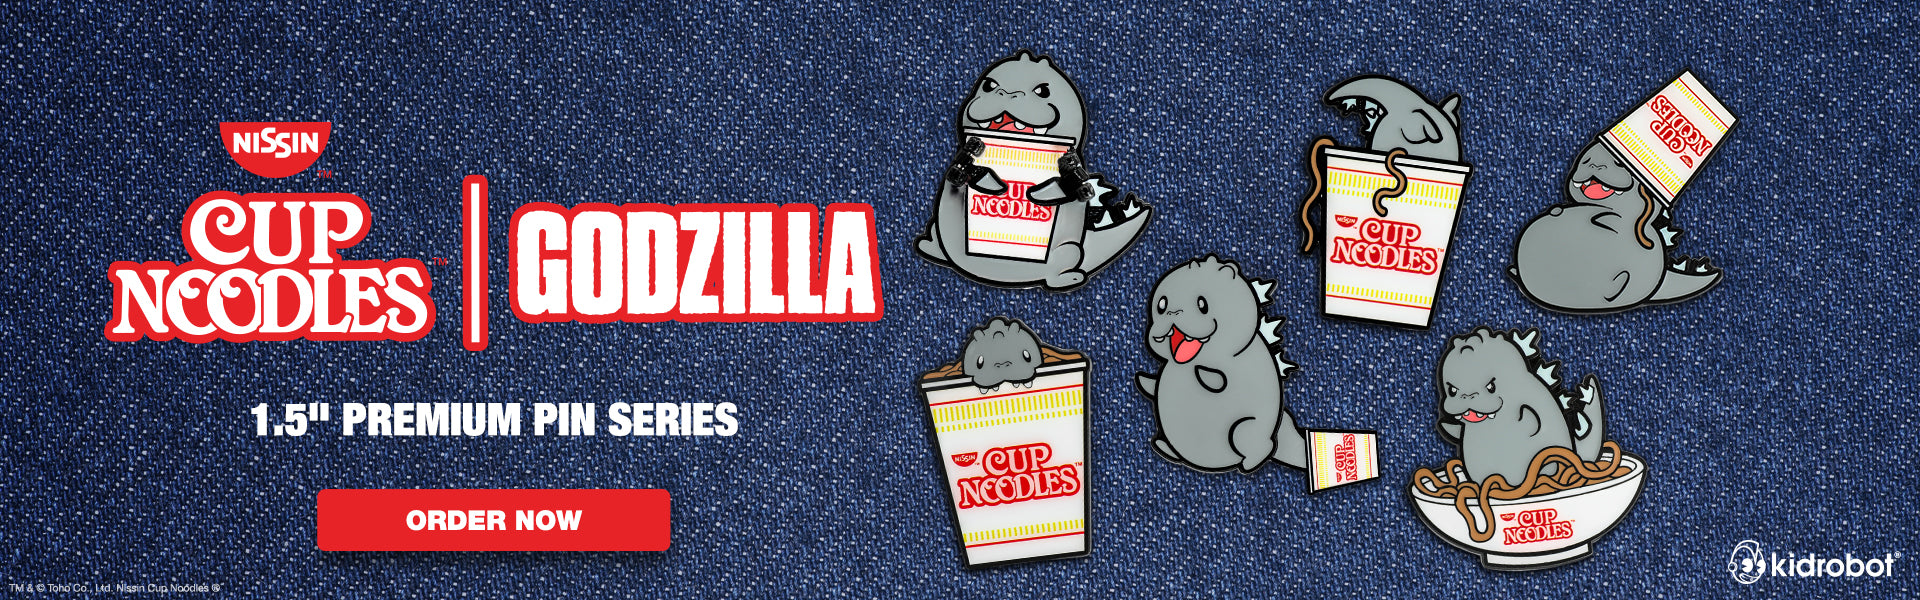 Nissin® Cup Noodles® x Godzilla 1.5" Premium Pin Series